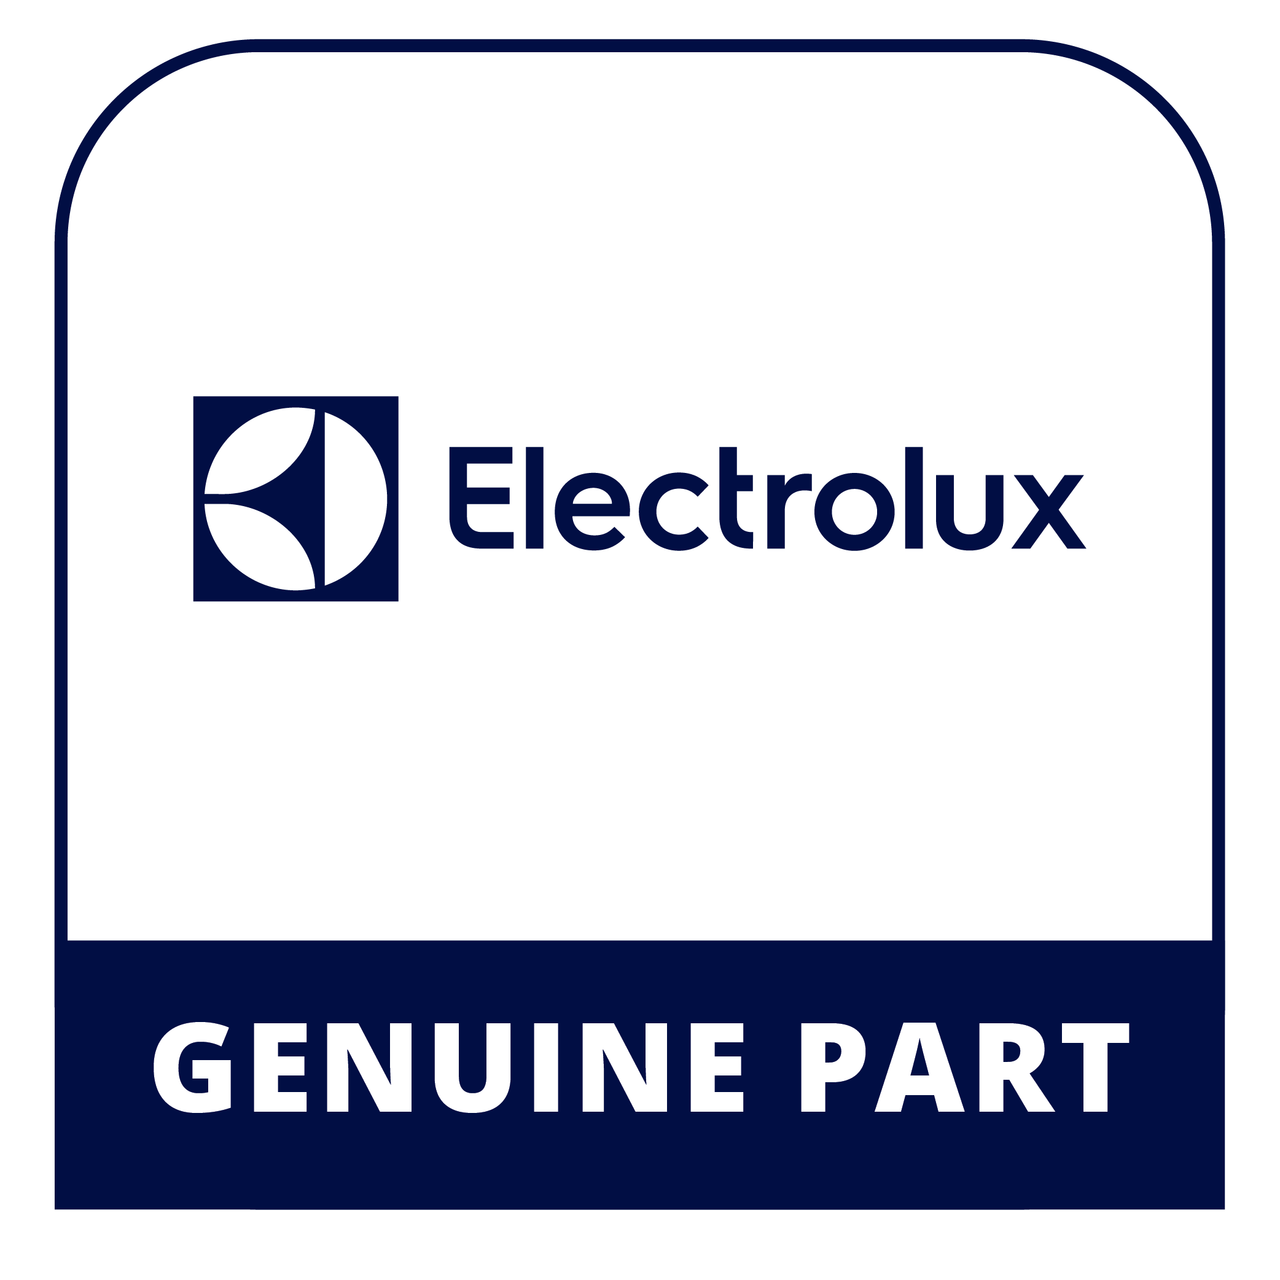 Frigidaire - Electrolux 5303922007 Clip-24 Pcs - Genuine Electrolux Part